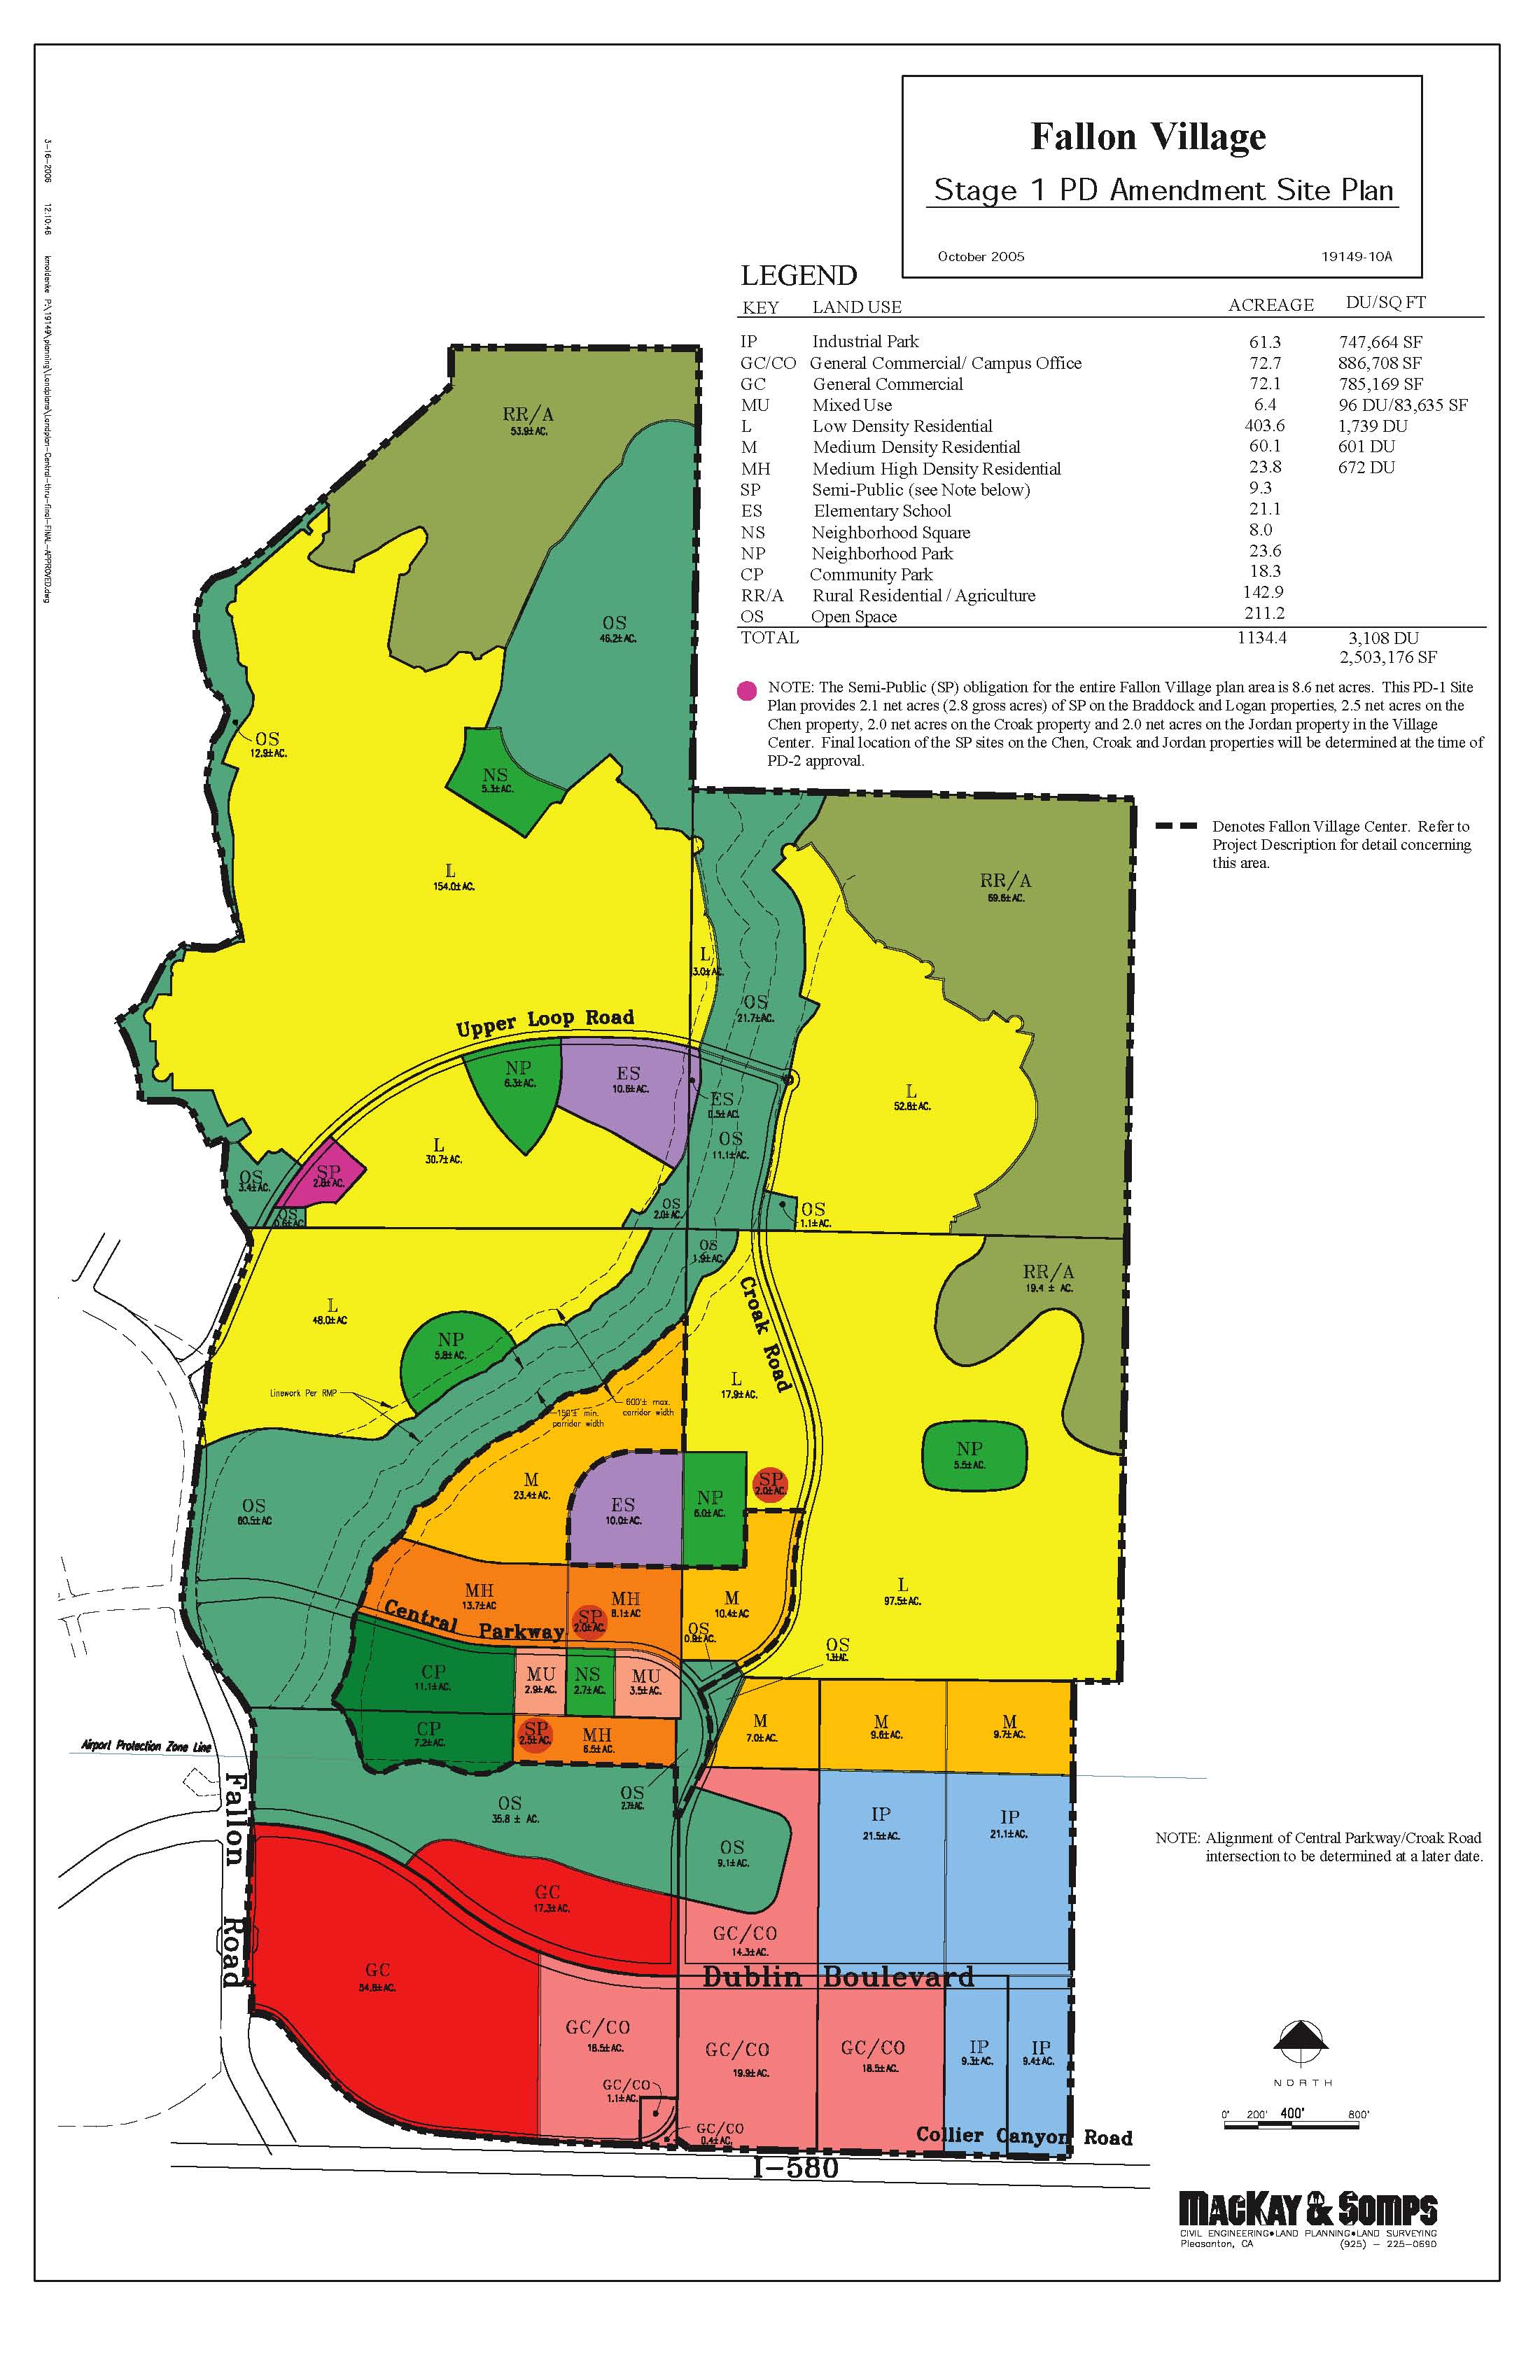 Fallon Village site plan